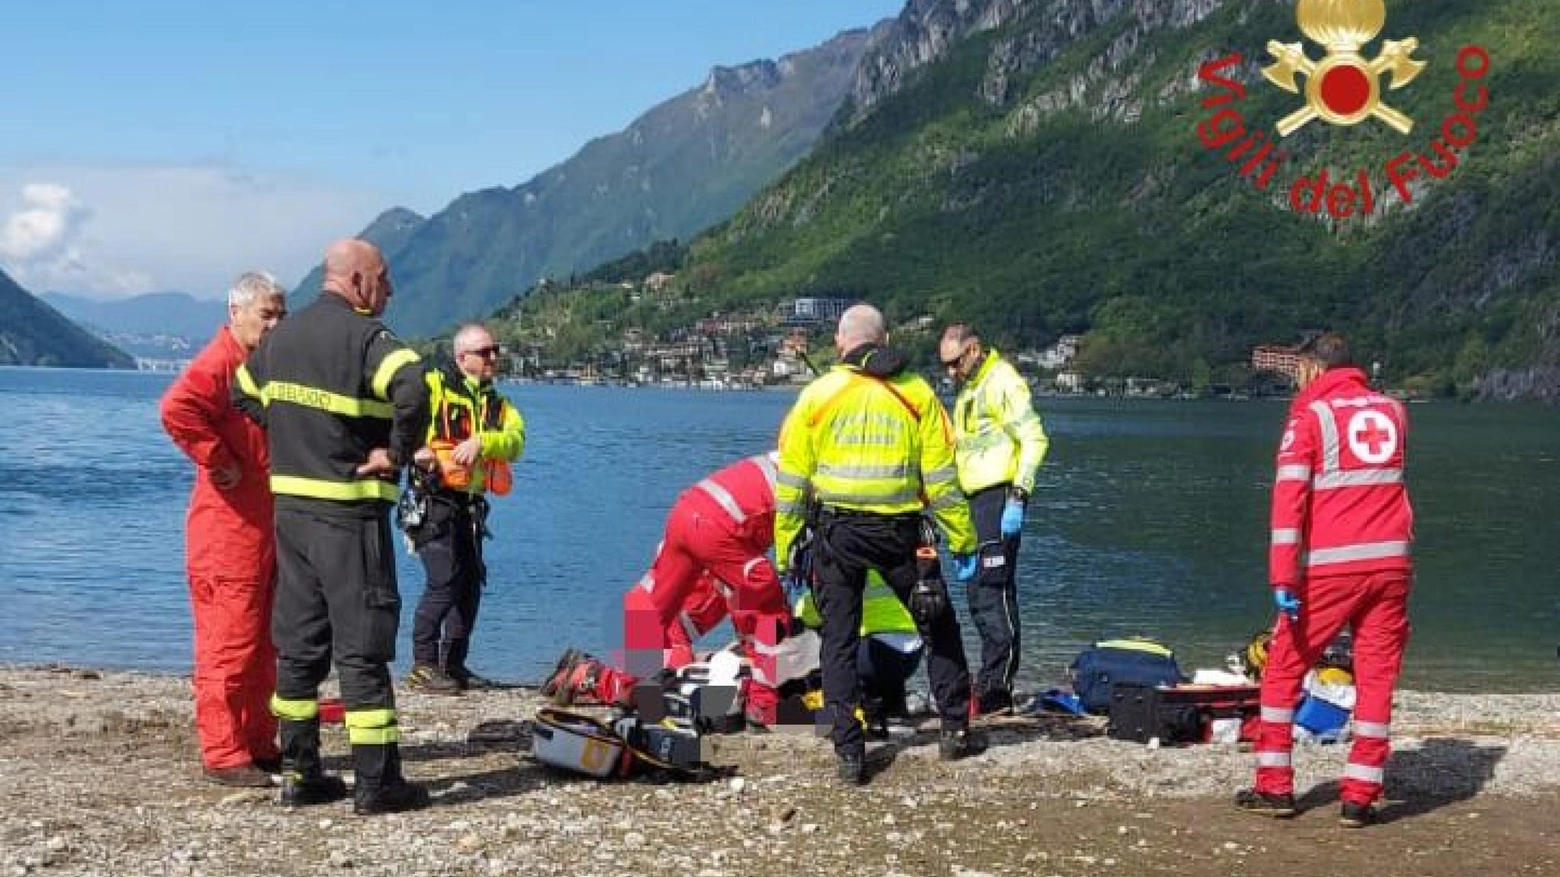 L’uomo è stato risucchiato dalla corrente e trascinato fino al vicino lago di Lugano. Recuperato in arresto cardiaco e in grave stato di ipotermia, è stato elitrasportato in ospedale